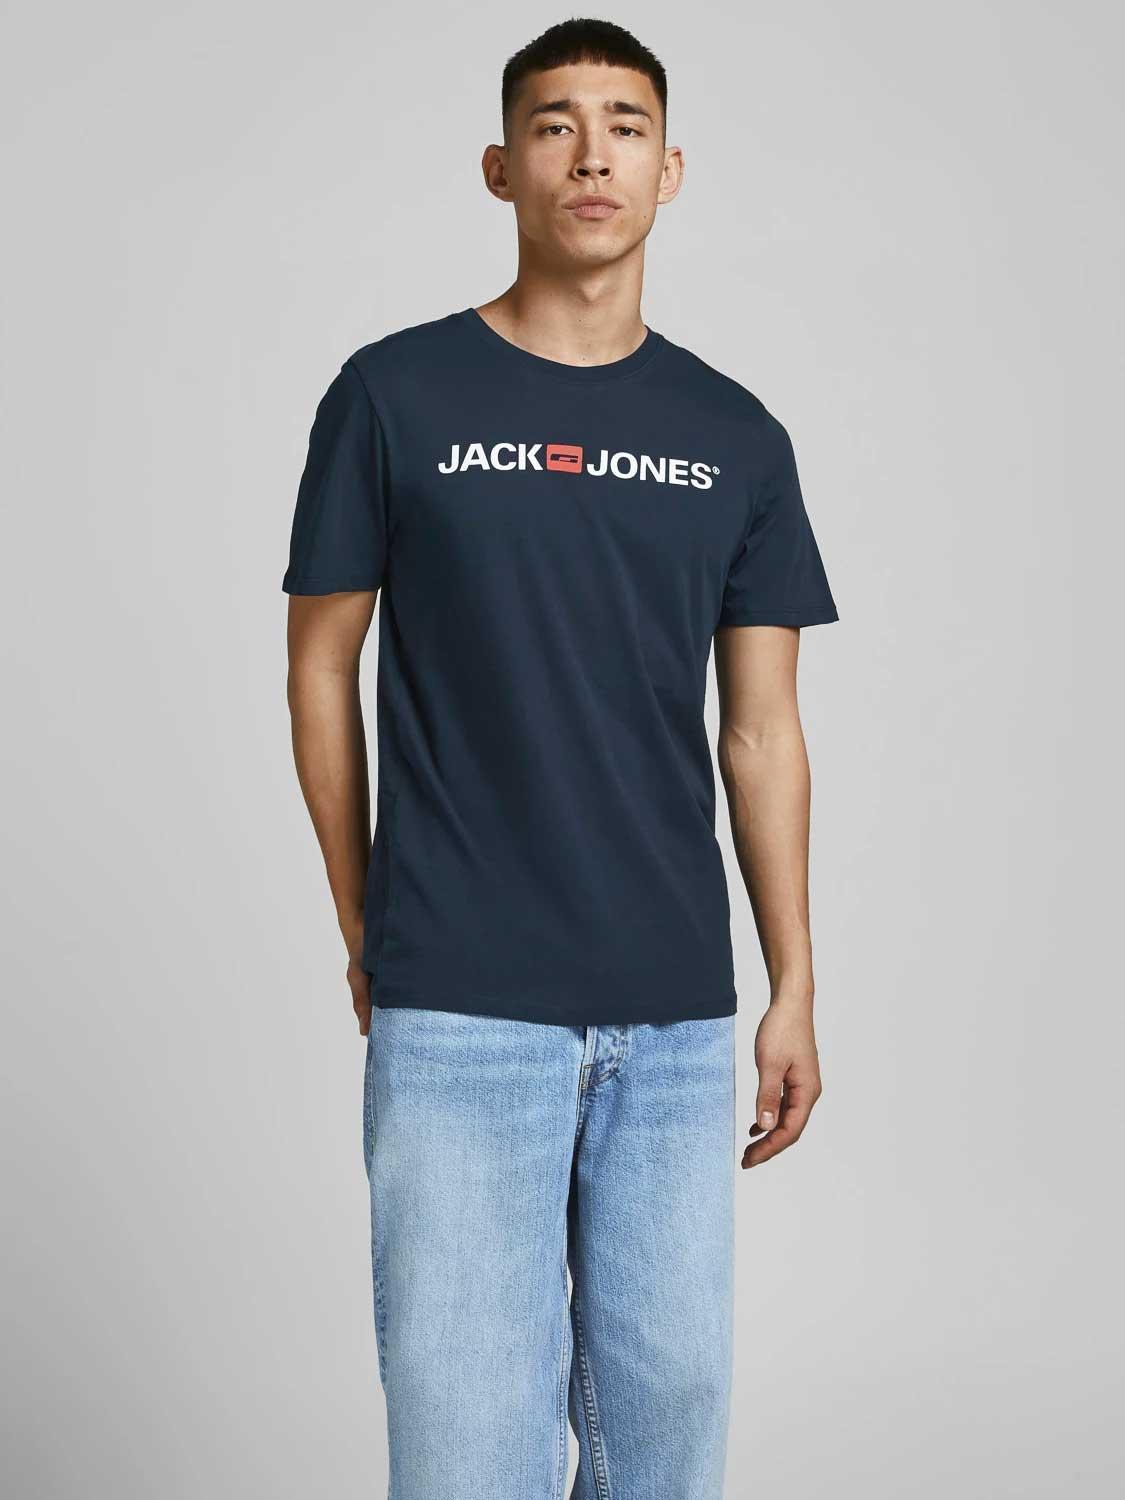 JACK & JONES Muška majica 12137126 teget